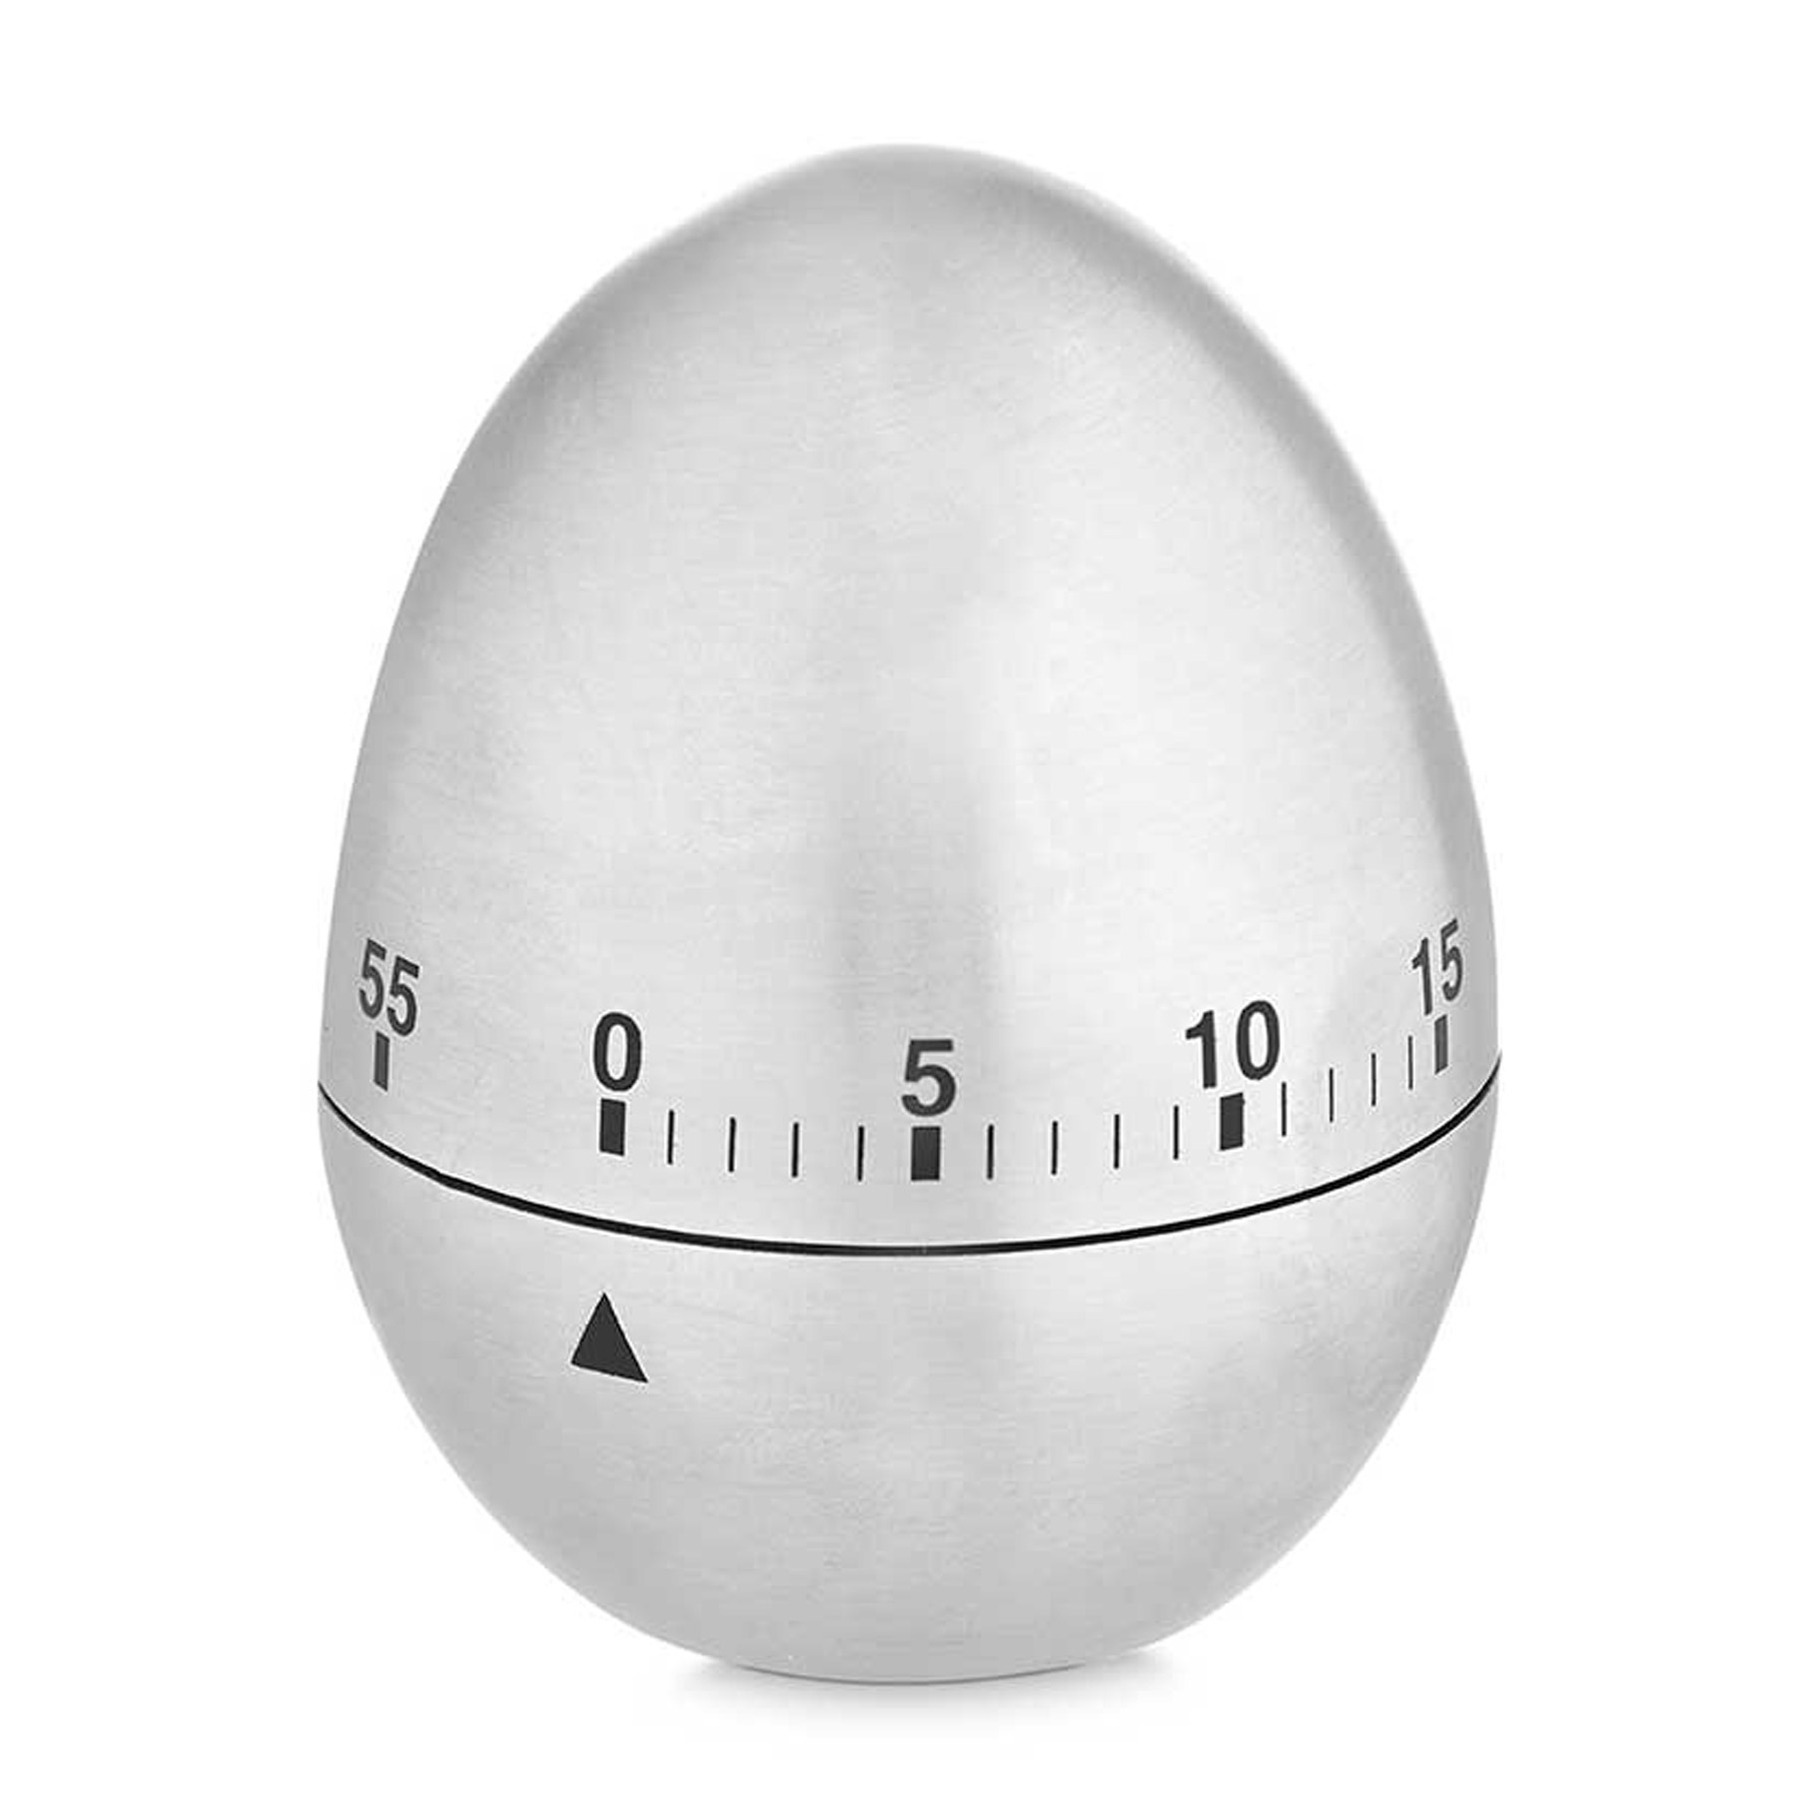 KINVARA Eieruhr KURZZEITMESSER Ei aus Kunststoff Küchen-Timer Küchenuhr Eieruhr 87, Küchentimer mechanisch 60 min. Edelstahloptik Wecker Stoppuhr